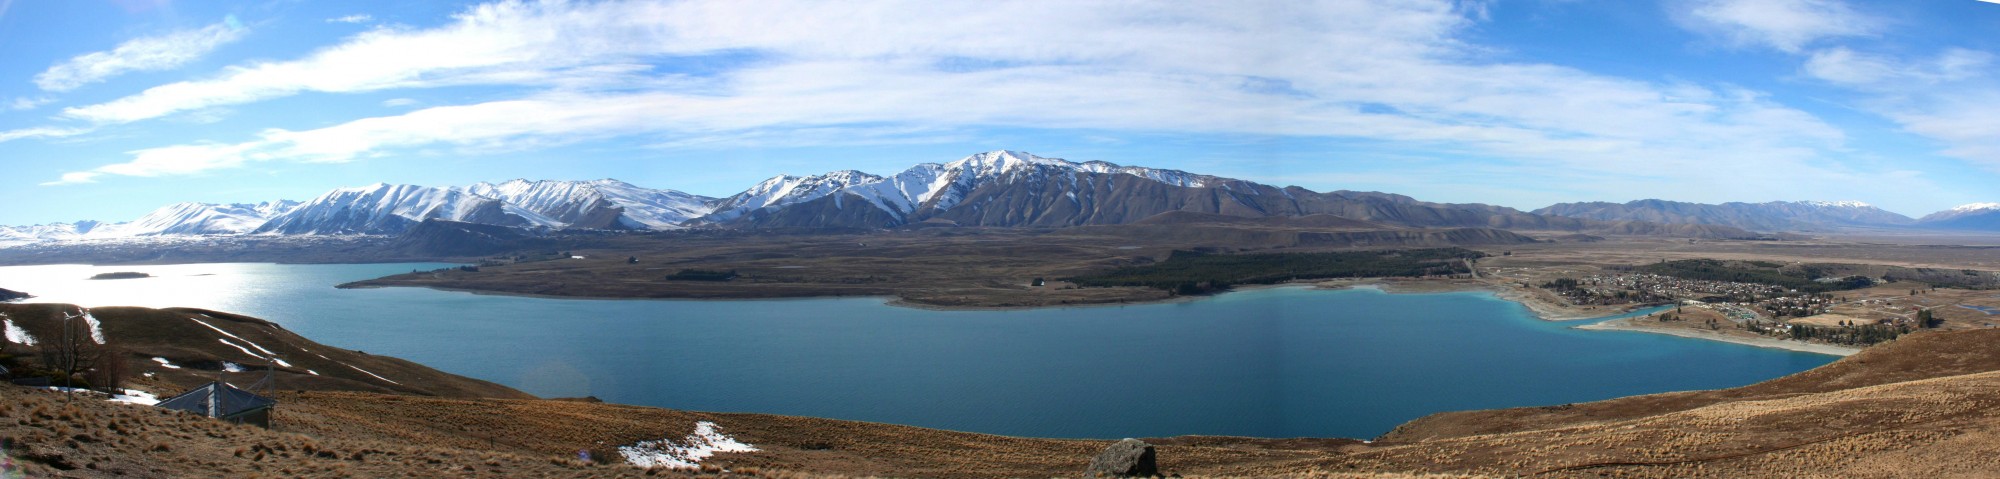 Lake Tekapo from Mt John Observatory